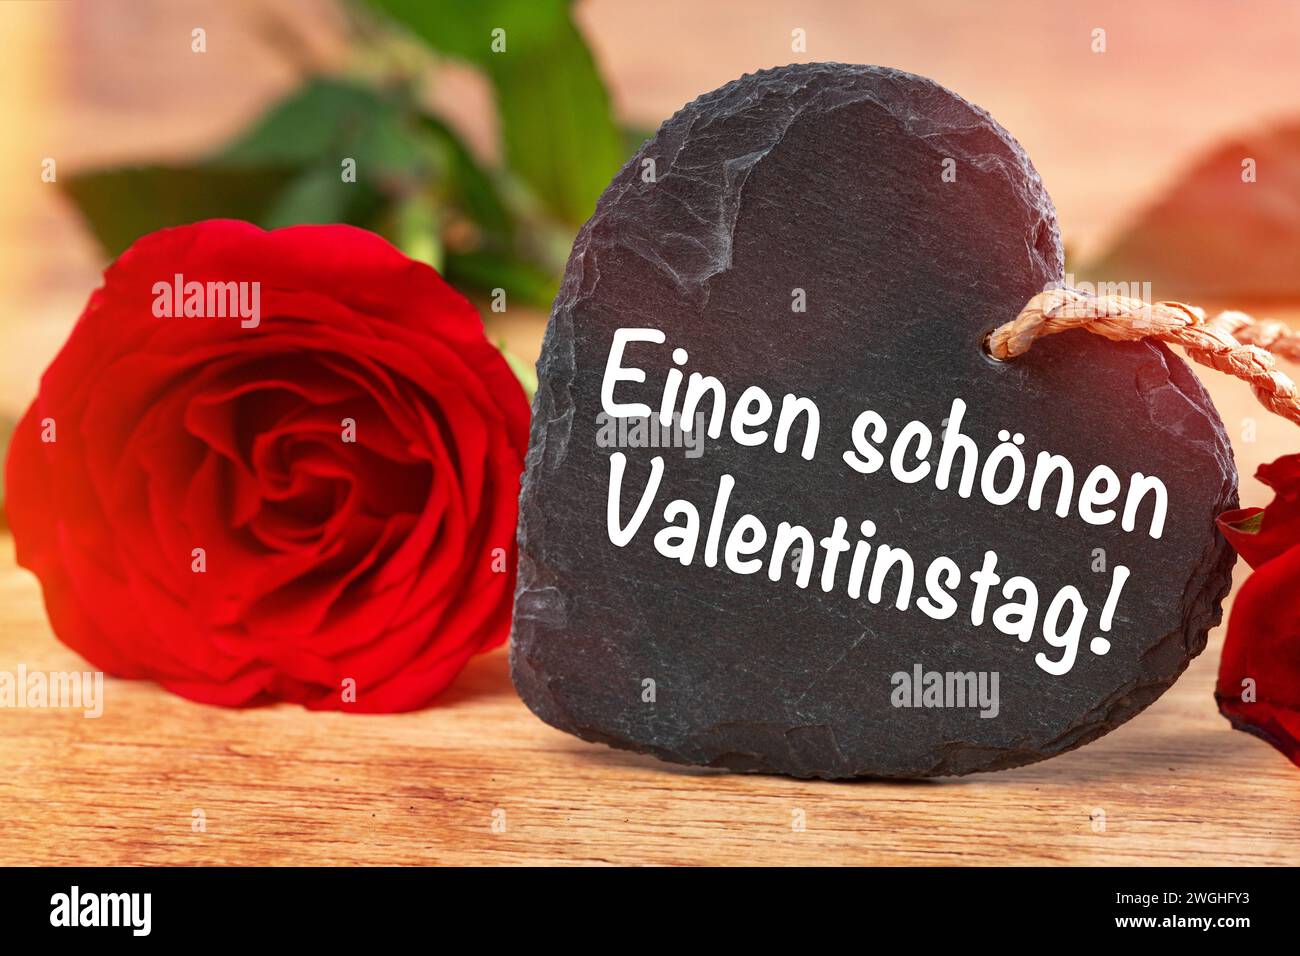 5 febbraio 2024: Buon San Valentino saluti su un cuore accanto a una rosa rossa FOTOMONTAGE *** einen schönen Valentinstag Grüße auf einem Herz neben einer roten Rose FOTOMONTAGE Foto Stock